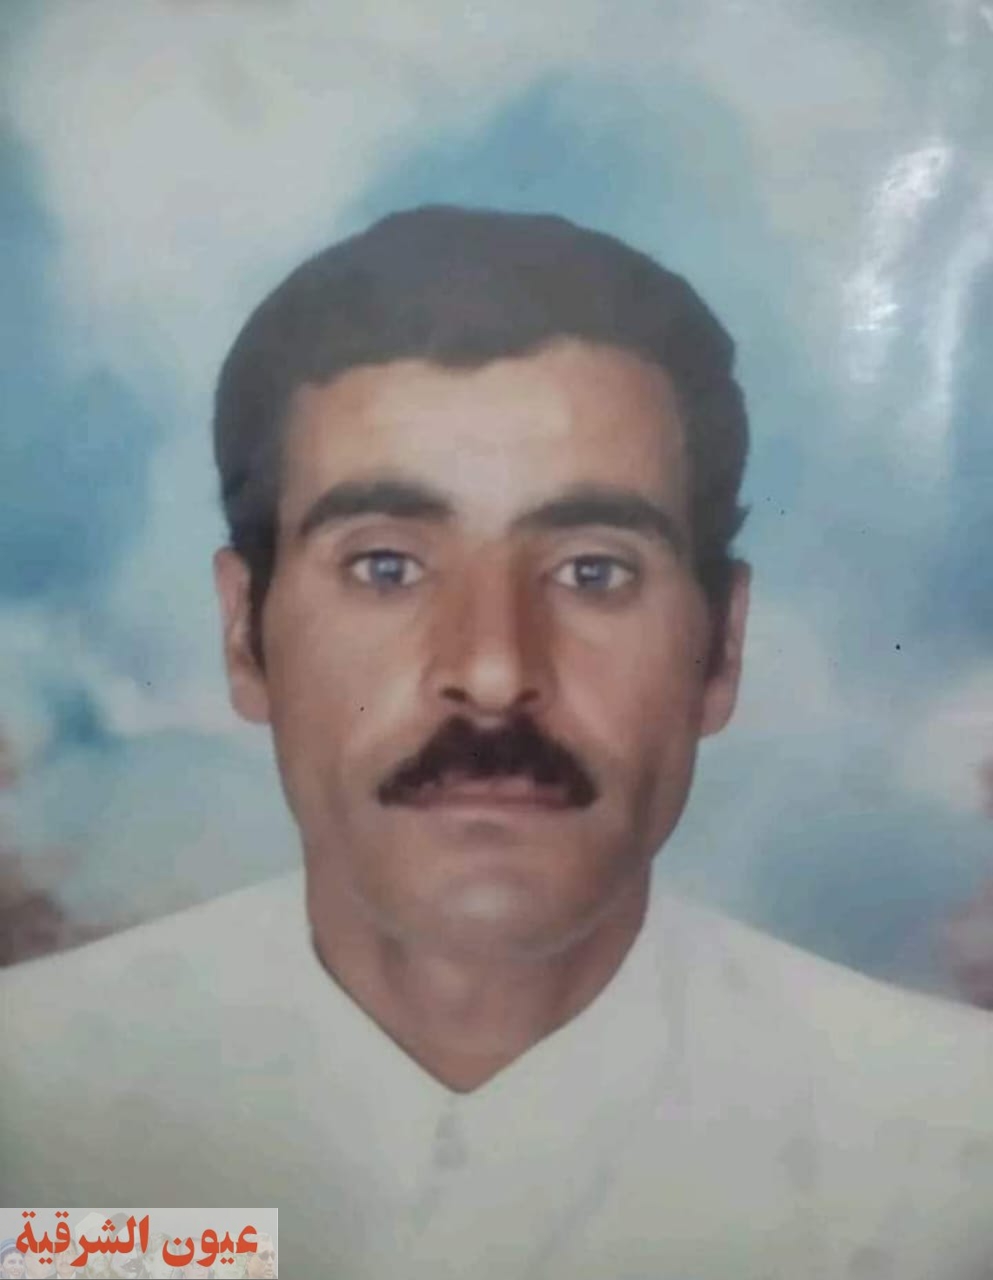 بعد إختفاءه.. العثور على جثمان حارس مدرسة مدفون تحت عقار بمدينة بالعاشر من رمضان